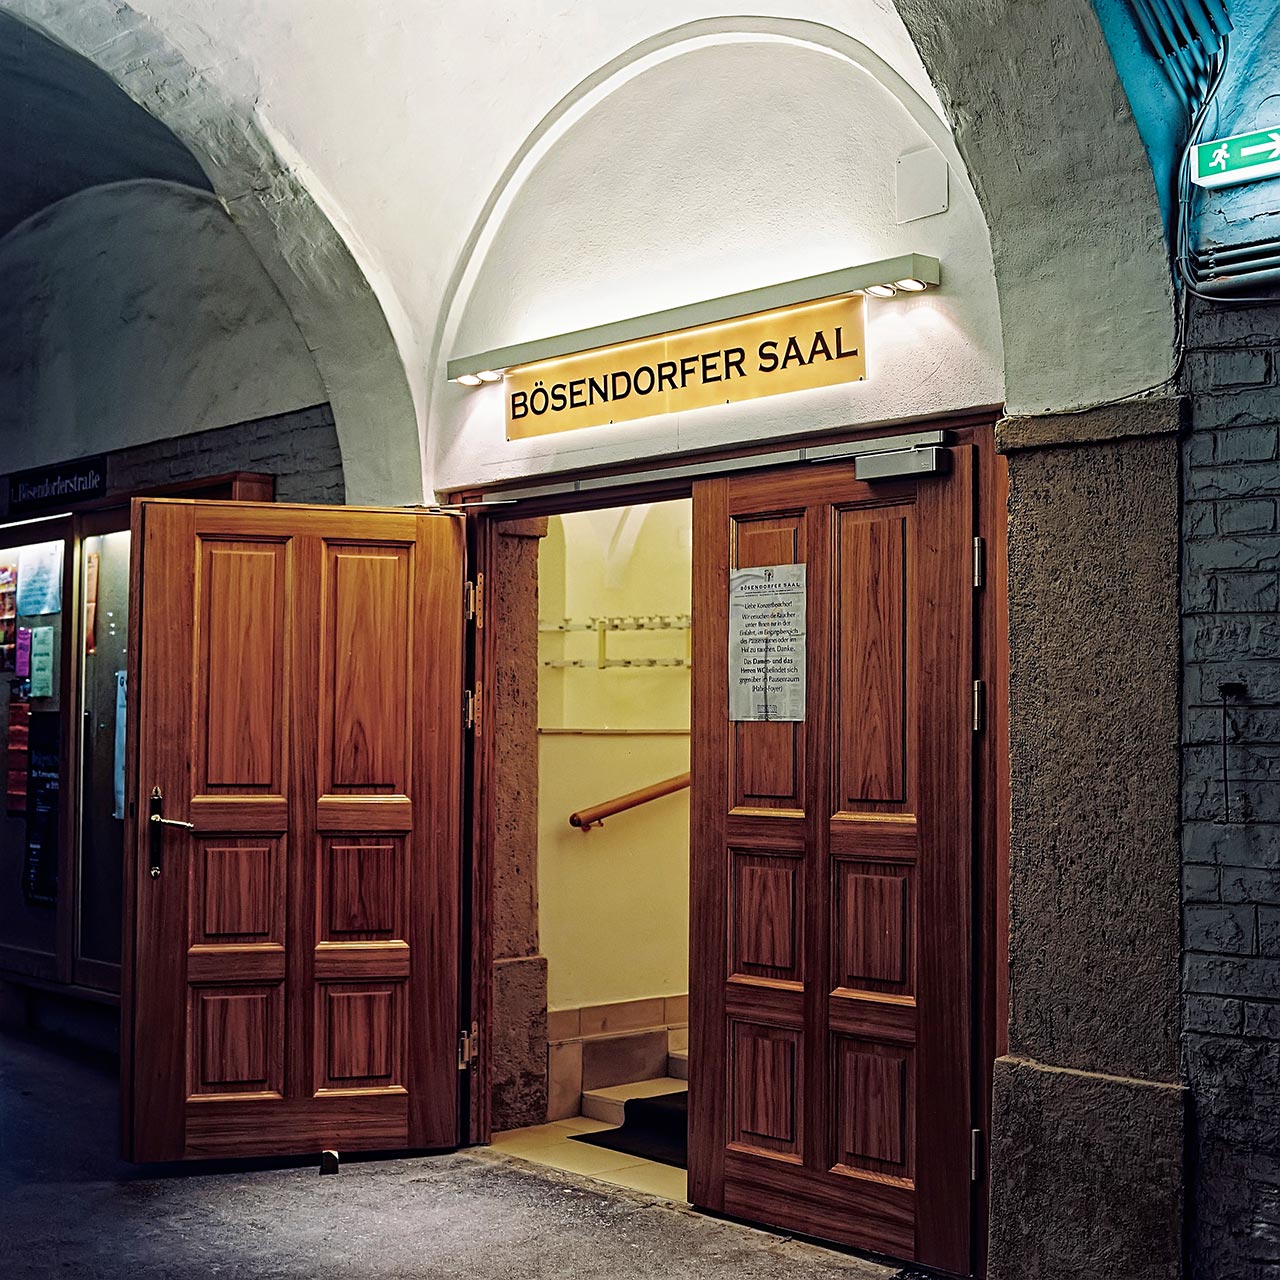 2001 - BÖSENDORFER - Konzertsaal, A-1040 Wien